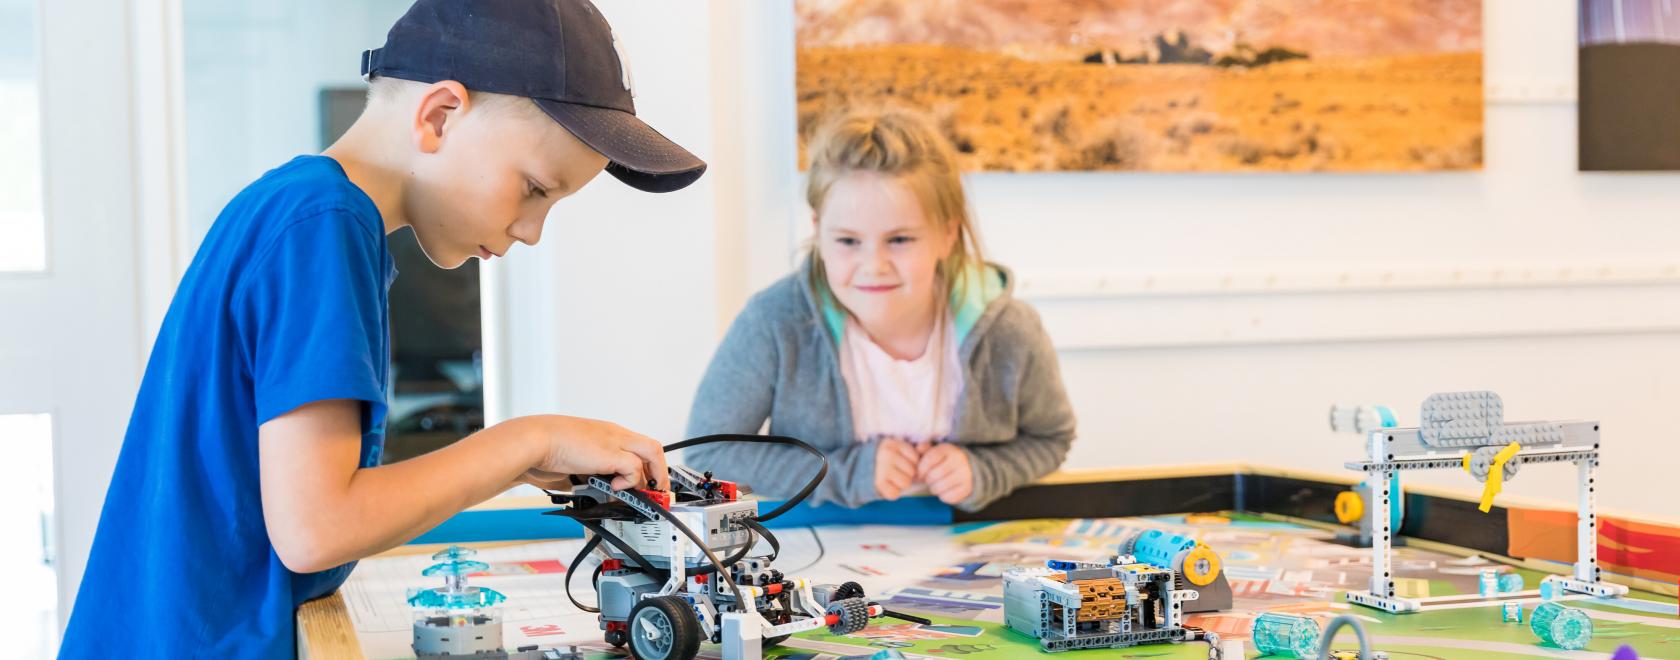 Poika rakentamassa robottiautoa Turun yliopiston Lasten yliopiston robottileirillä 2018. Kuva: Hanna Oksanen